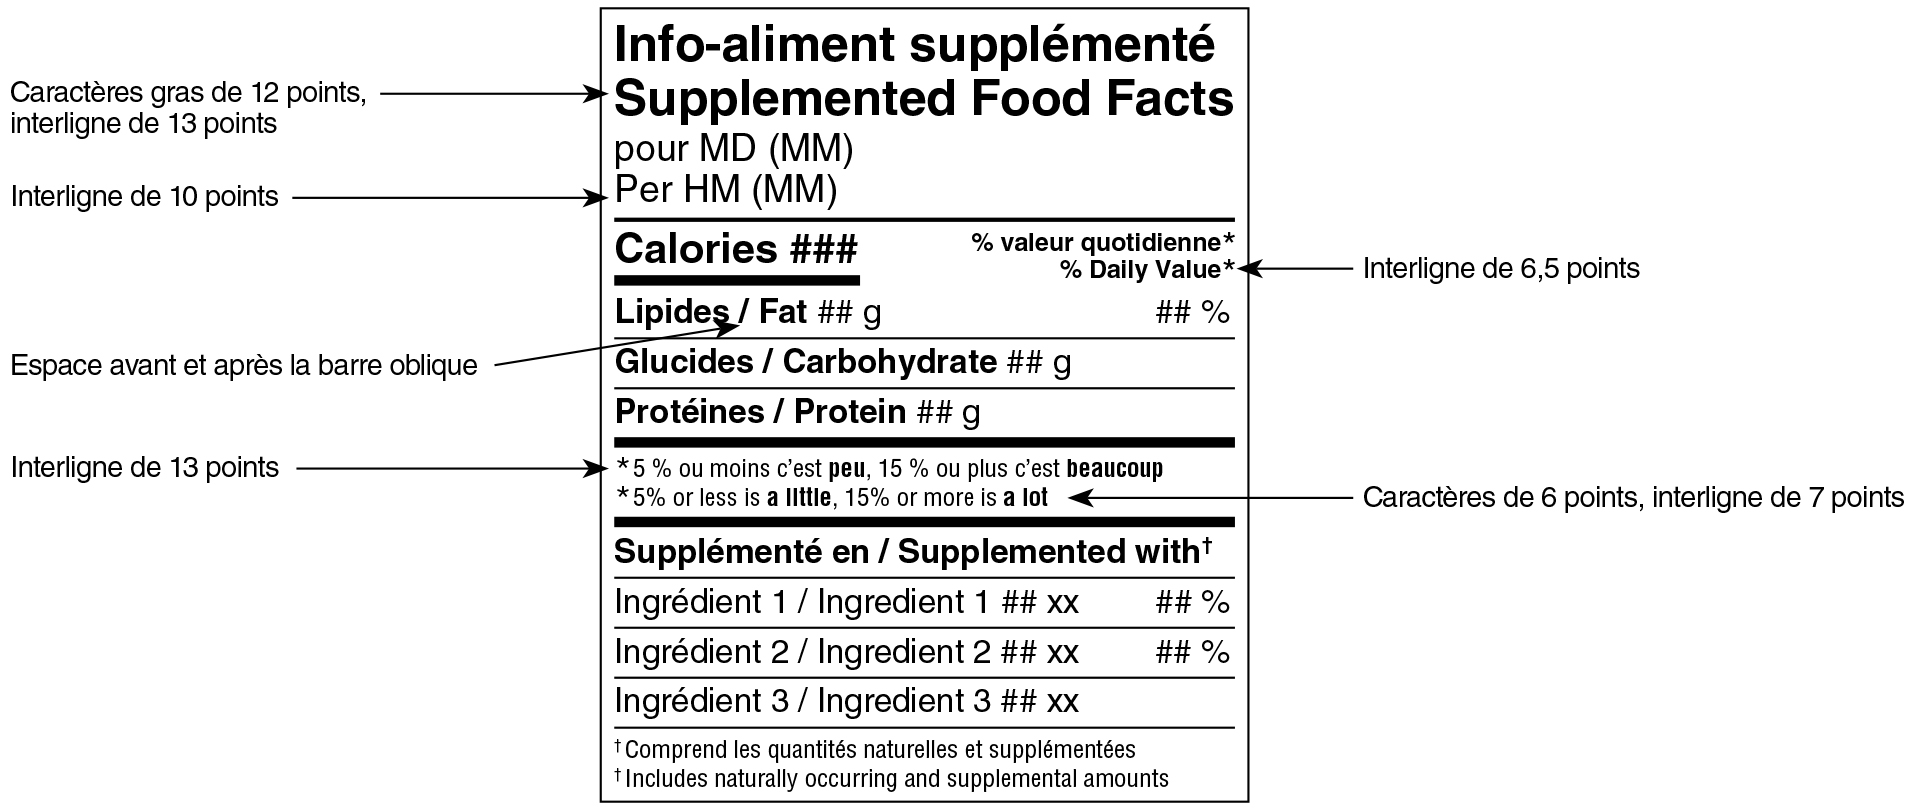 Modèle standard simplifié bilingue du tableau des renseignements sur les aliments supplémentés avec indications. Version texte ci-dessous.